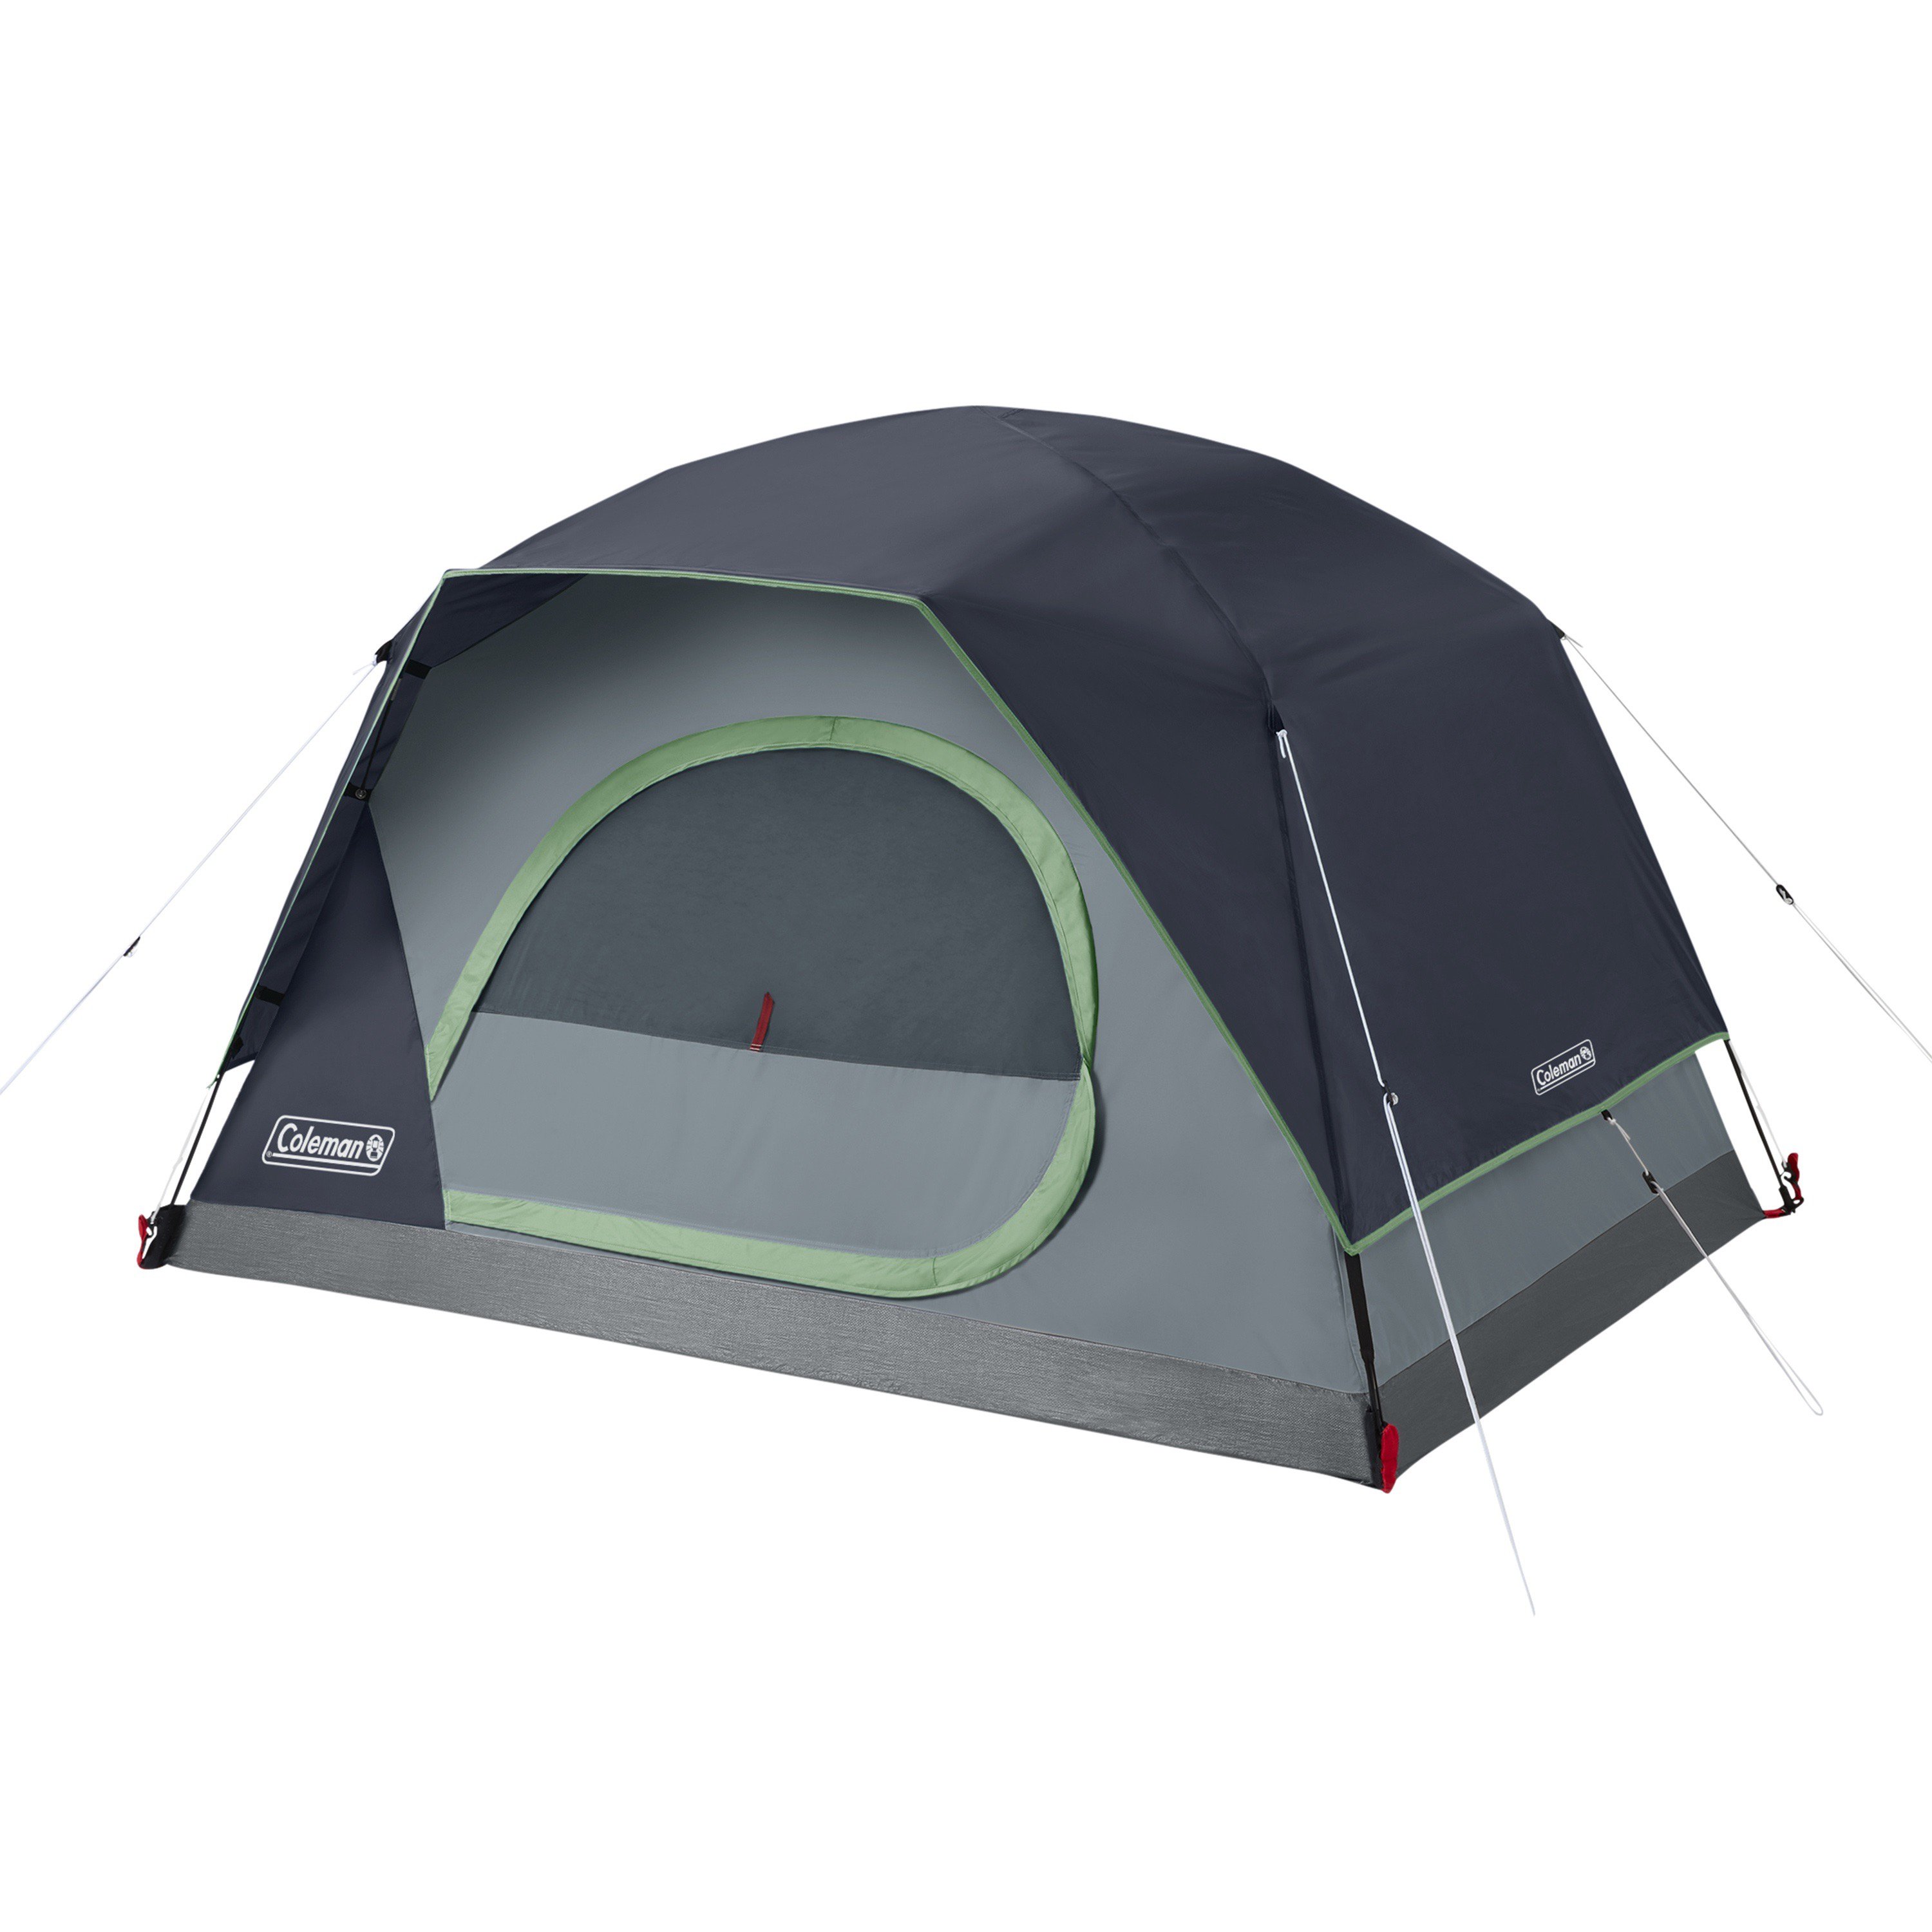 Moreel onderwijs vergeetachtig dozijn 2-Person Skydome™ Camping Tent | Coleman